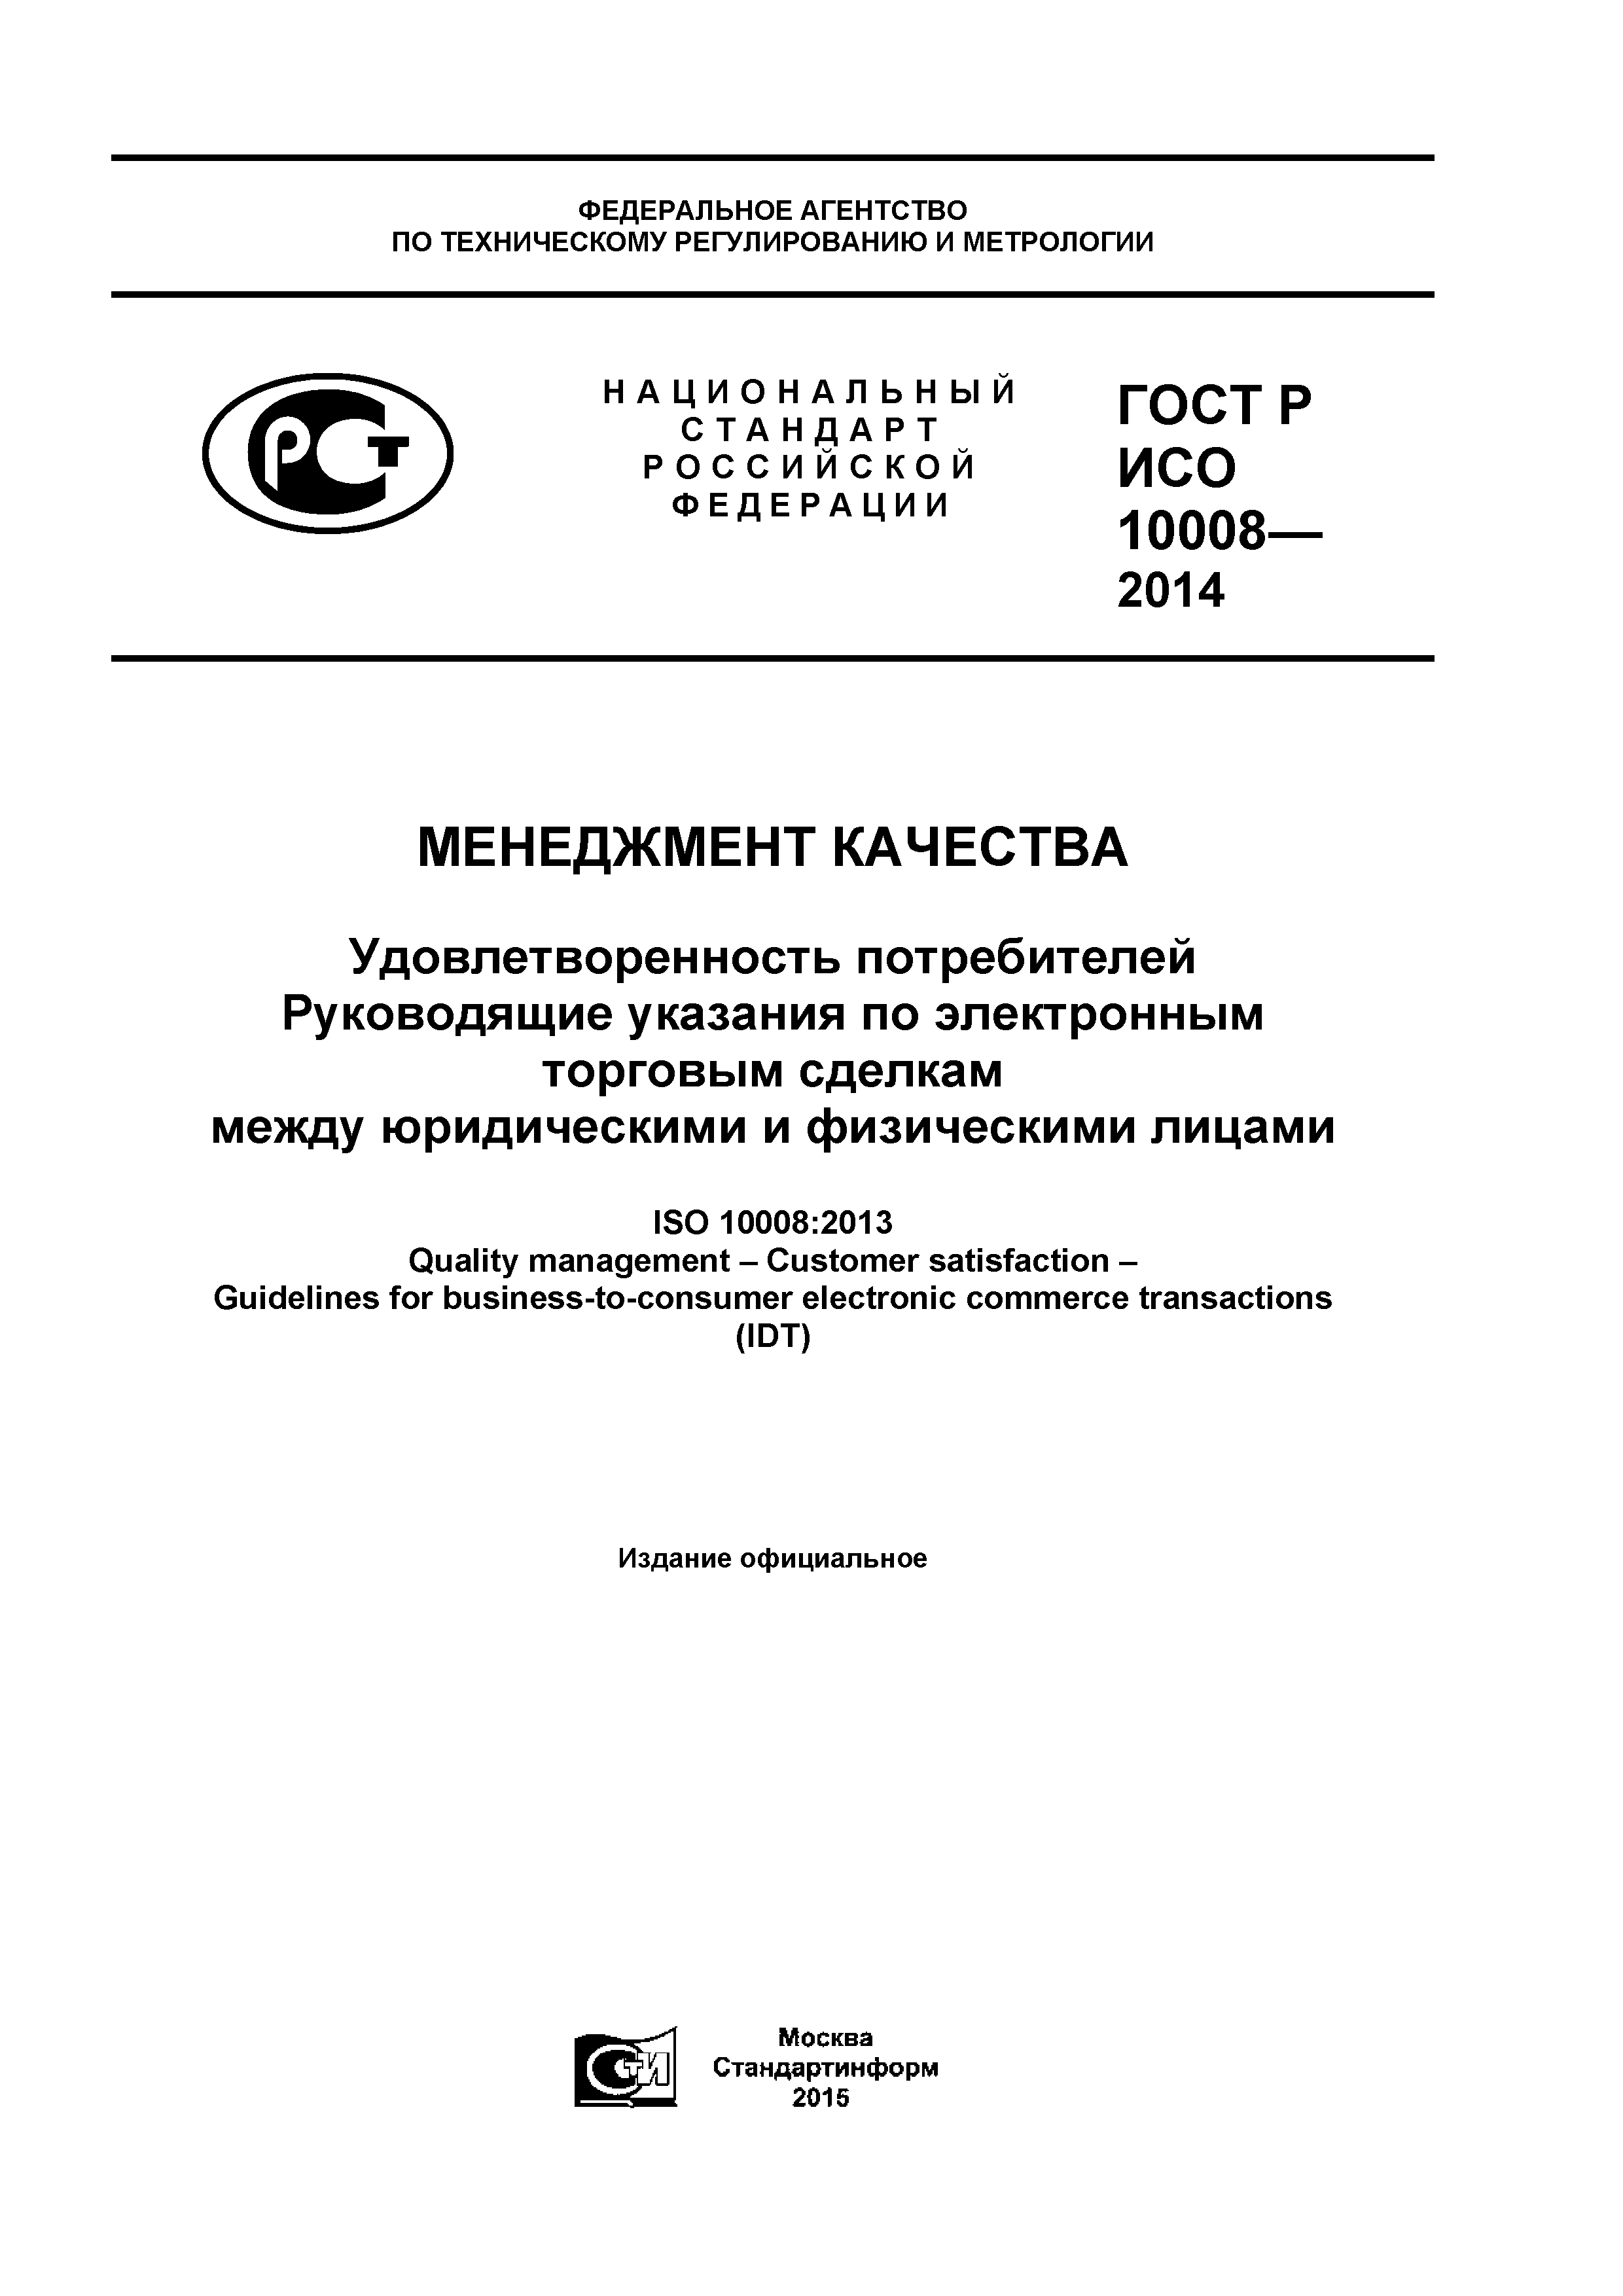 ГОСТ Р ИСО 10008-2014